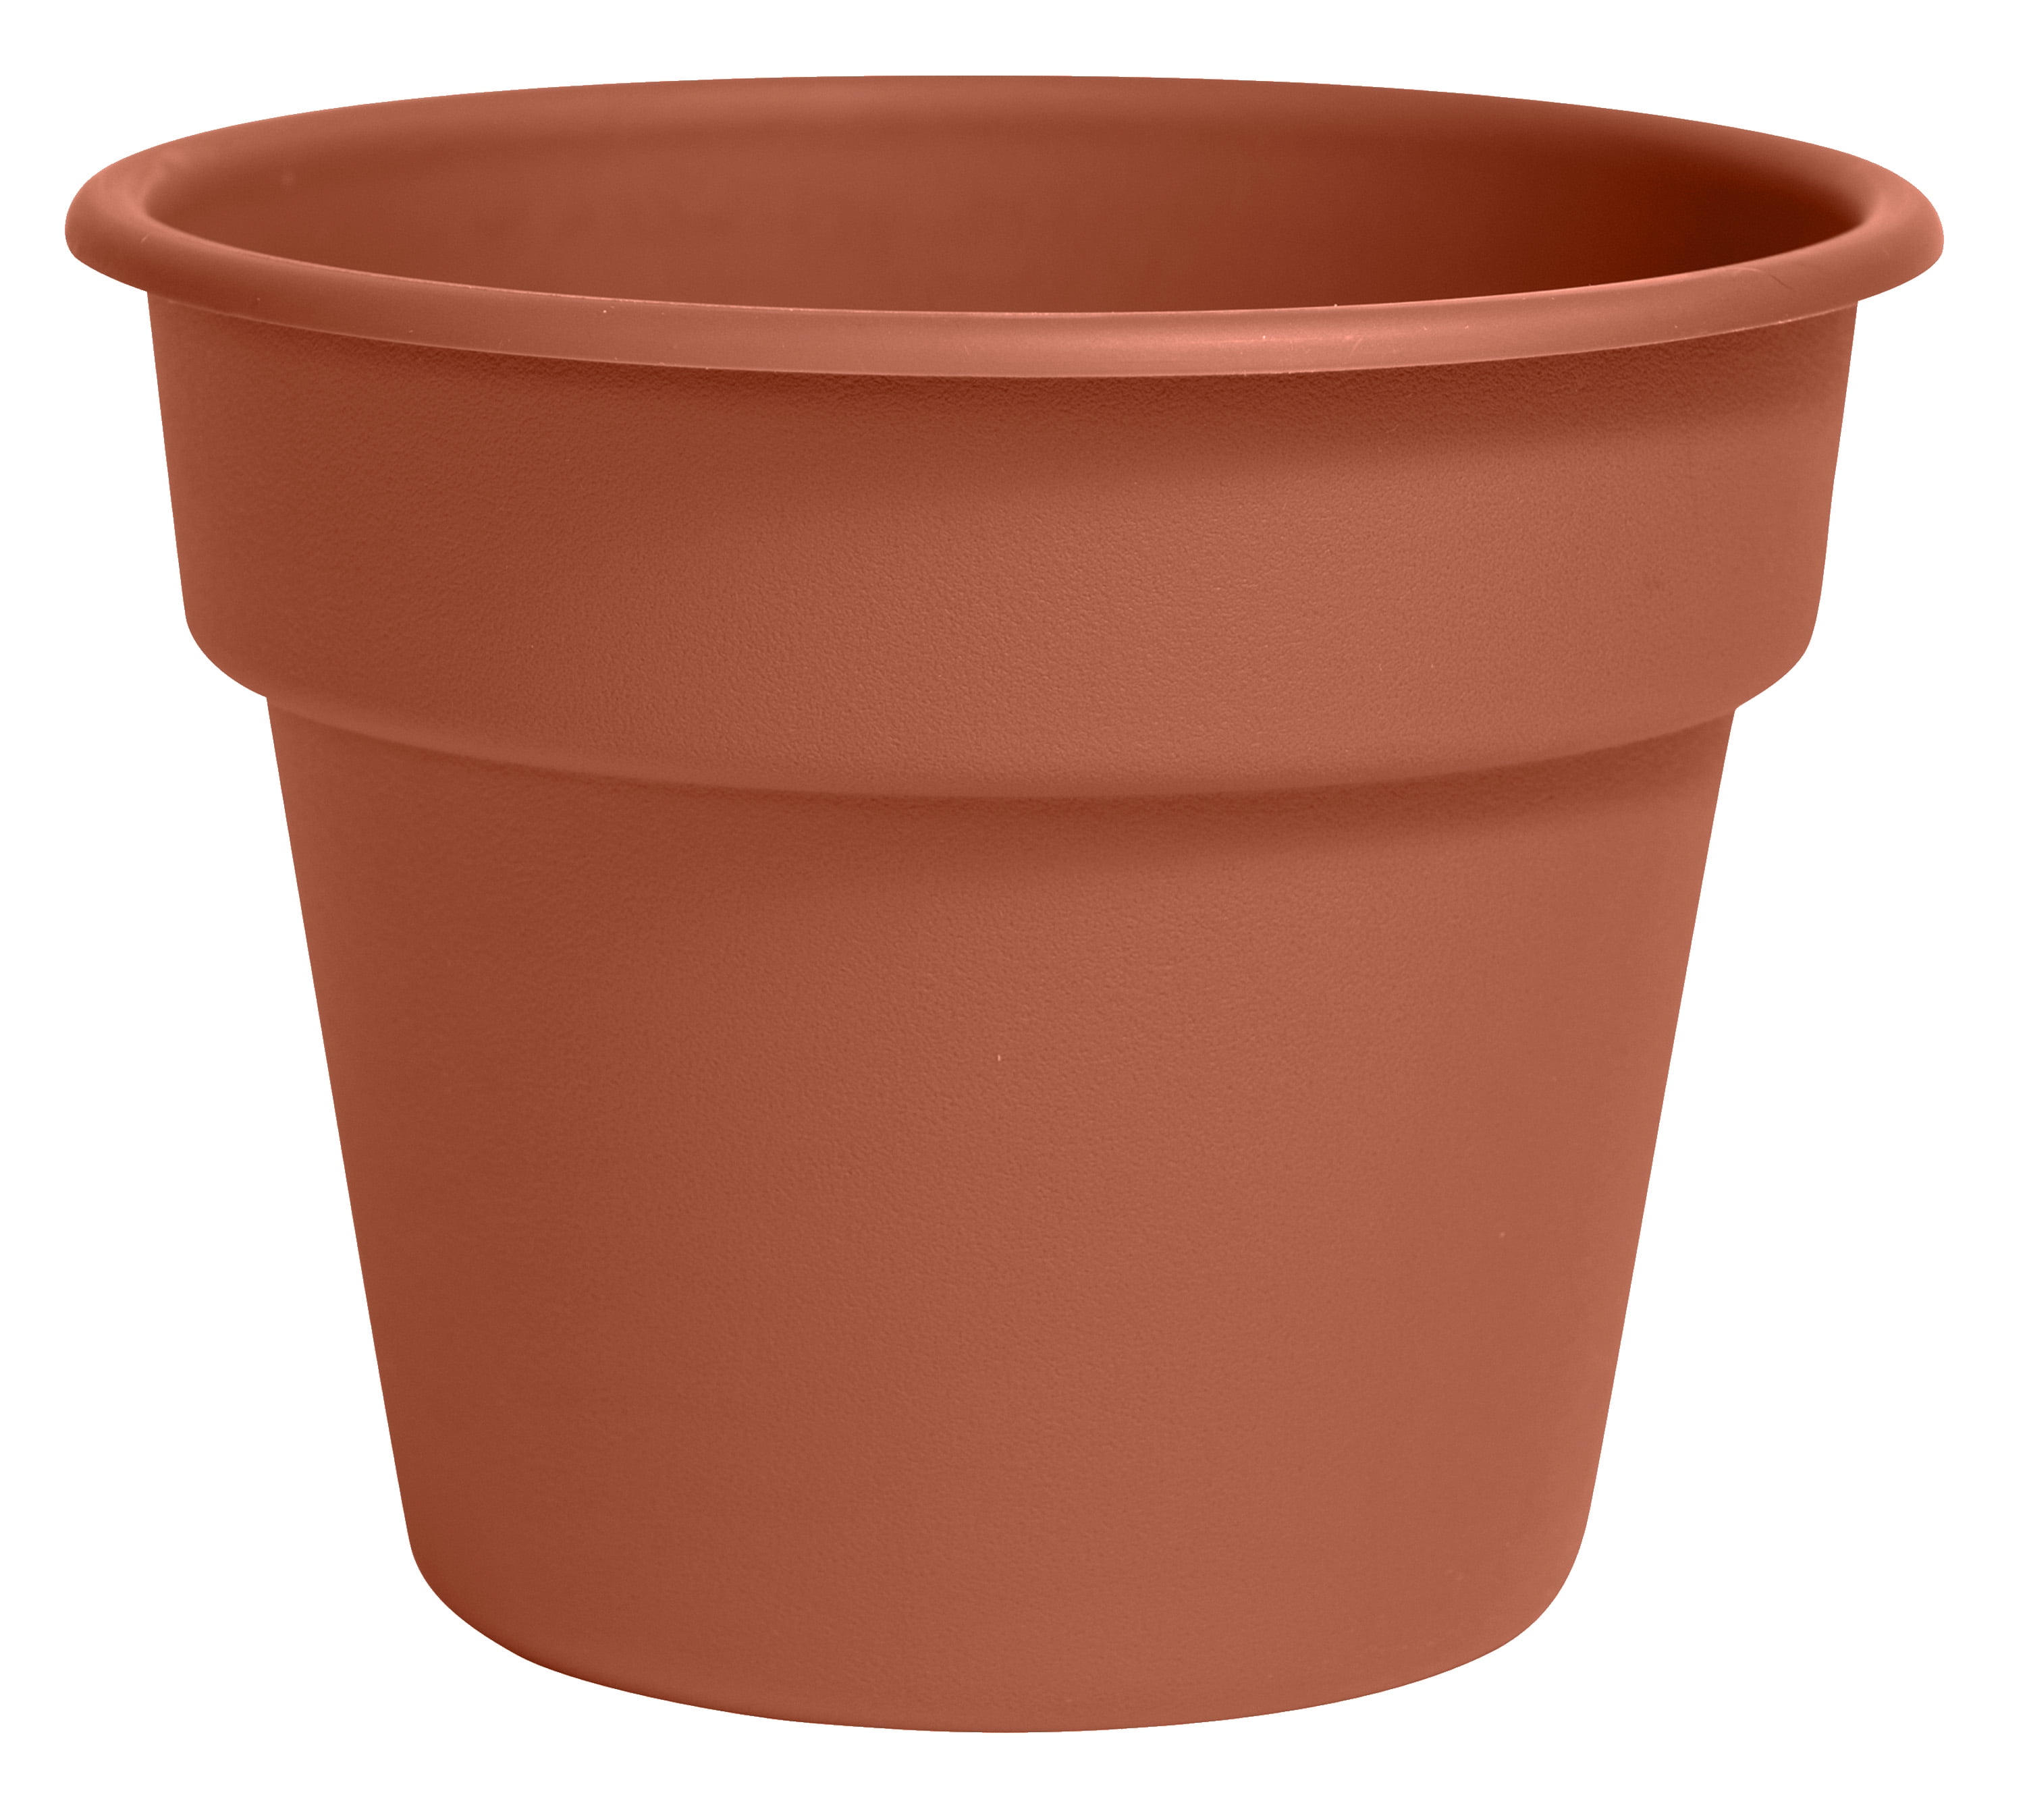 Ornamental Plastic Plant Pot Round Terracotta Colour 36cm/44cm/49cm Great Value! 